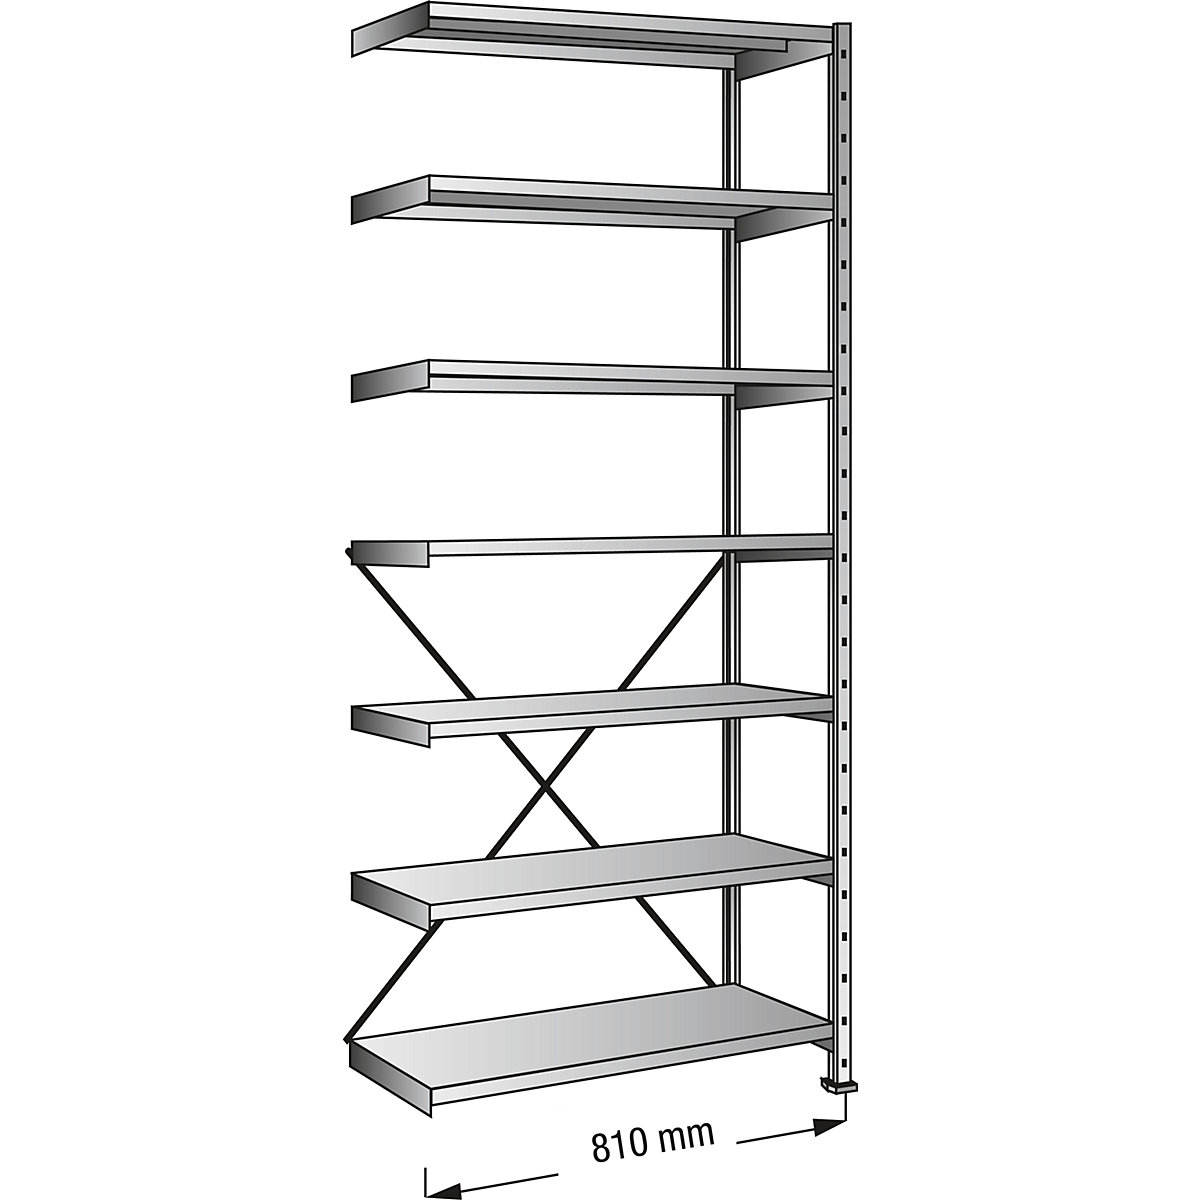 Boltless shelving unit, zinc plated, 7 shelves, height 2640 mm, shelf width 800 mm, depth 400 mm, extension shelf unit